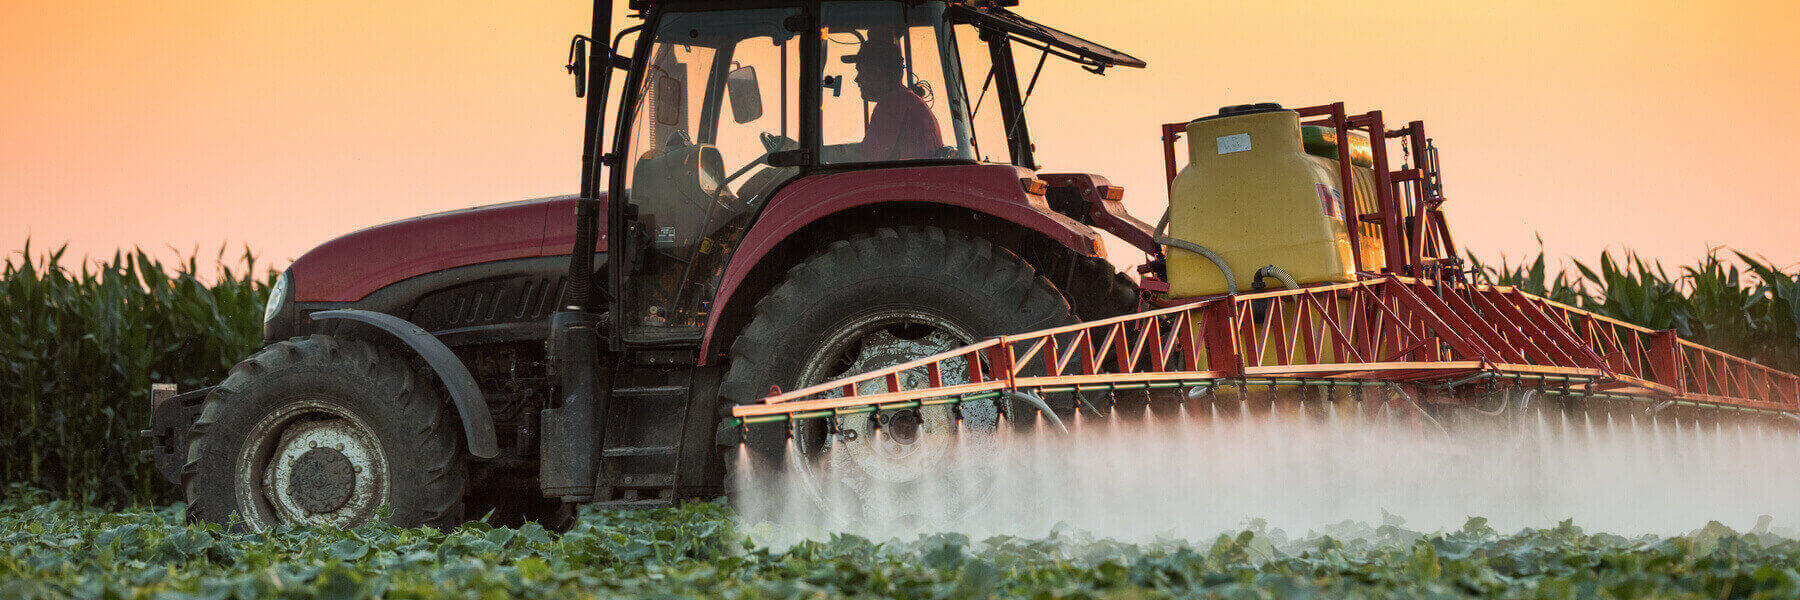 farm equipment spraying pesticide across crops